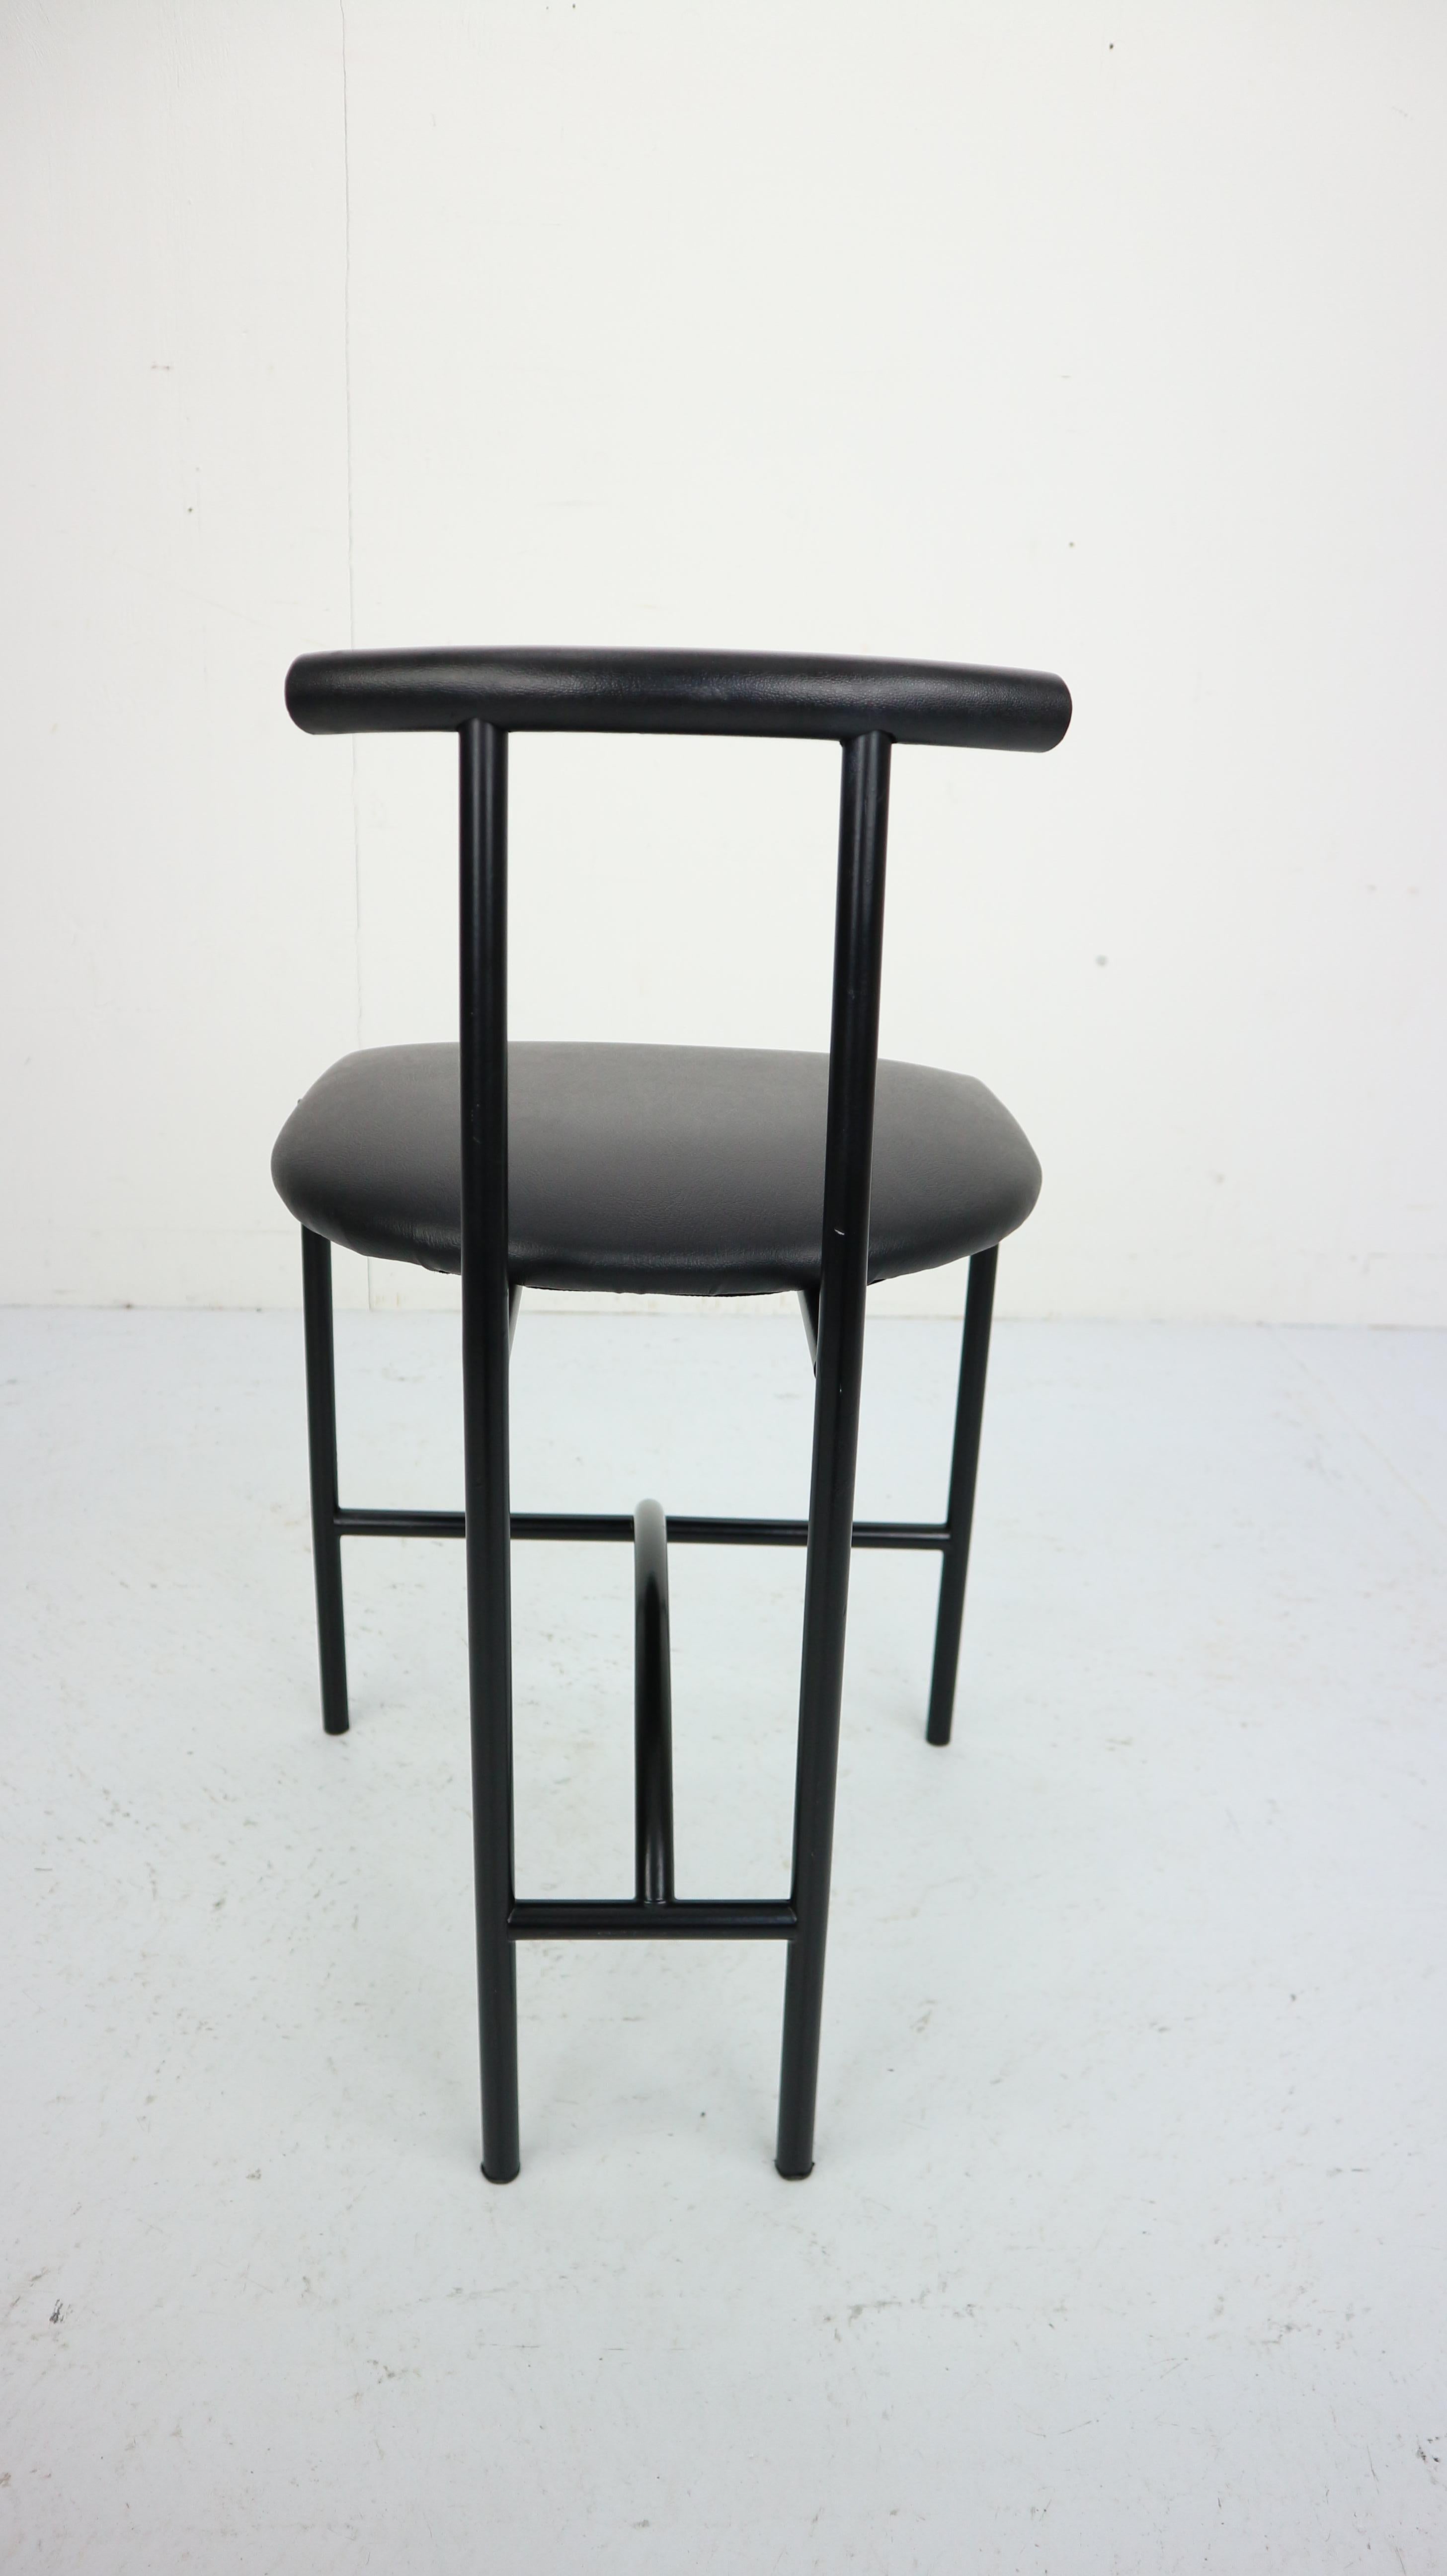 Bieffeplast 'Tokyo' Chair by Rodney Kinsman, 1985, Italy 1